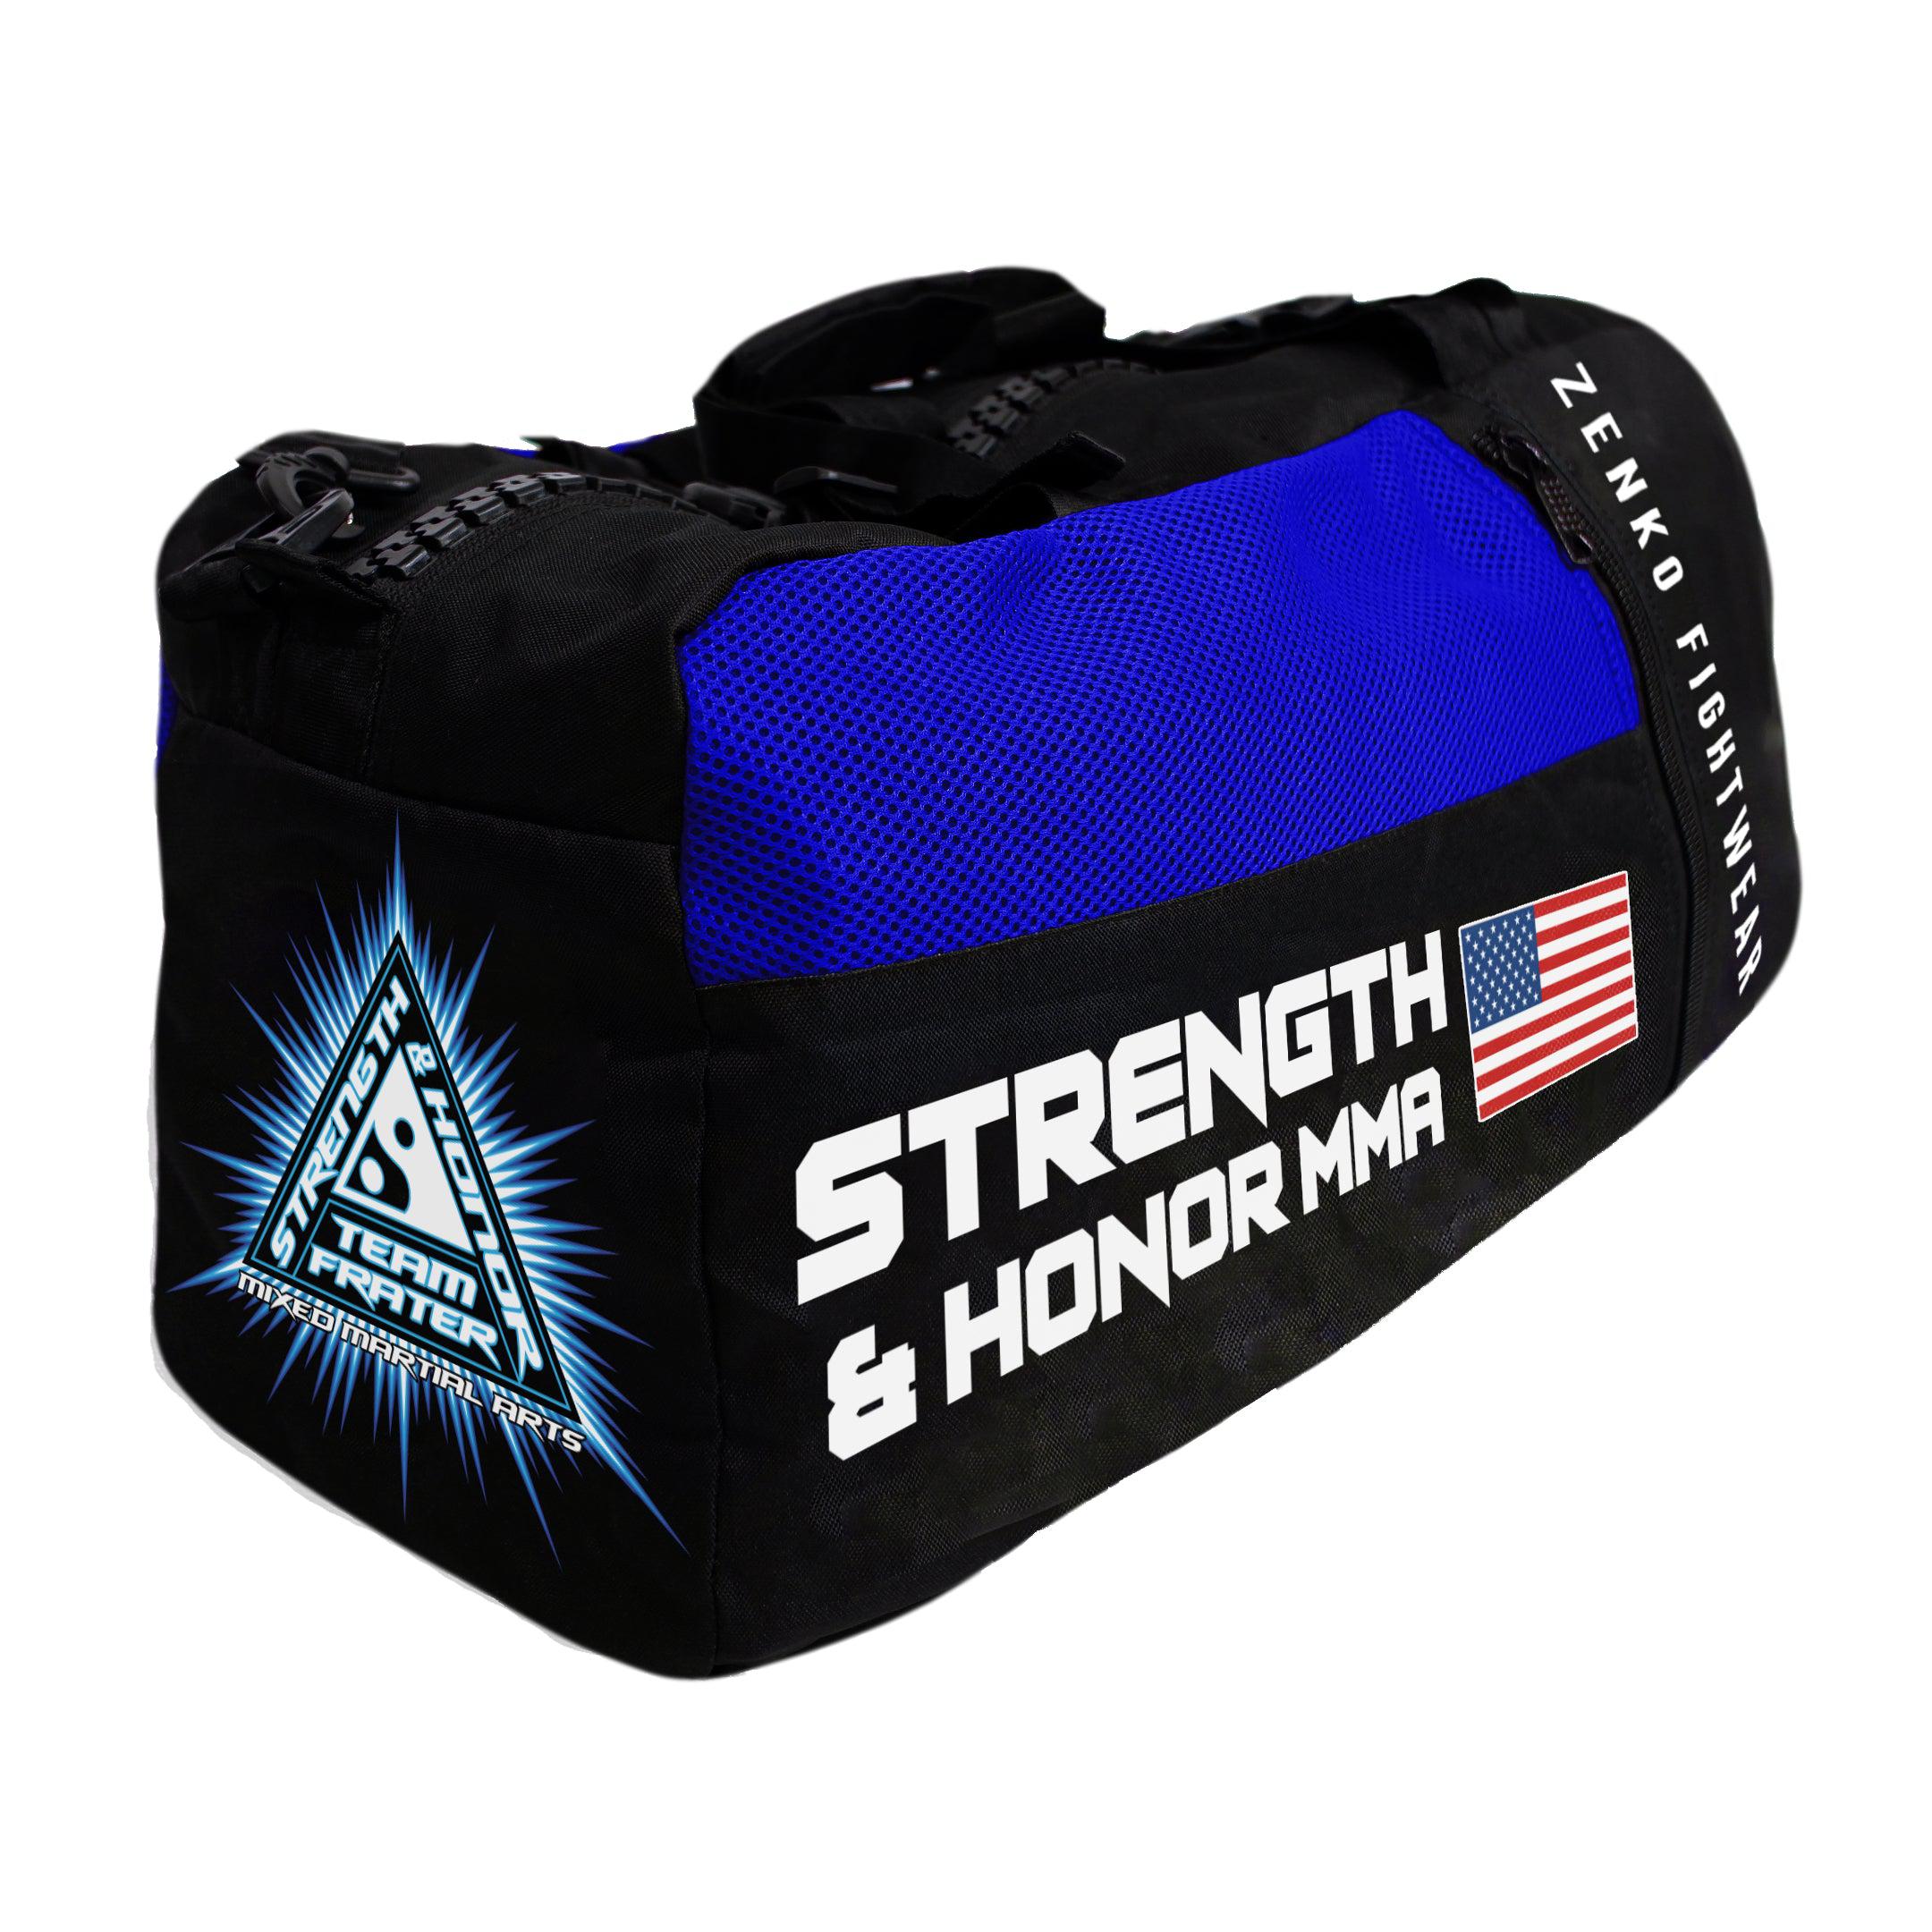 Strength & Honor MMA Gear Bag - Zenko Fightwear